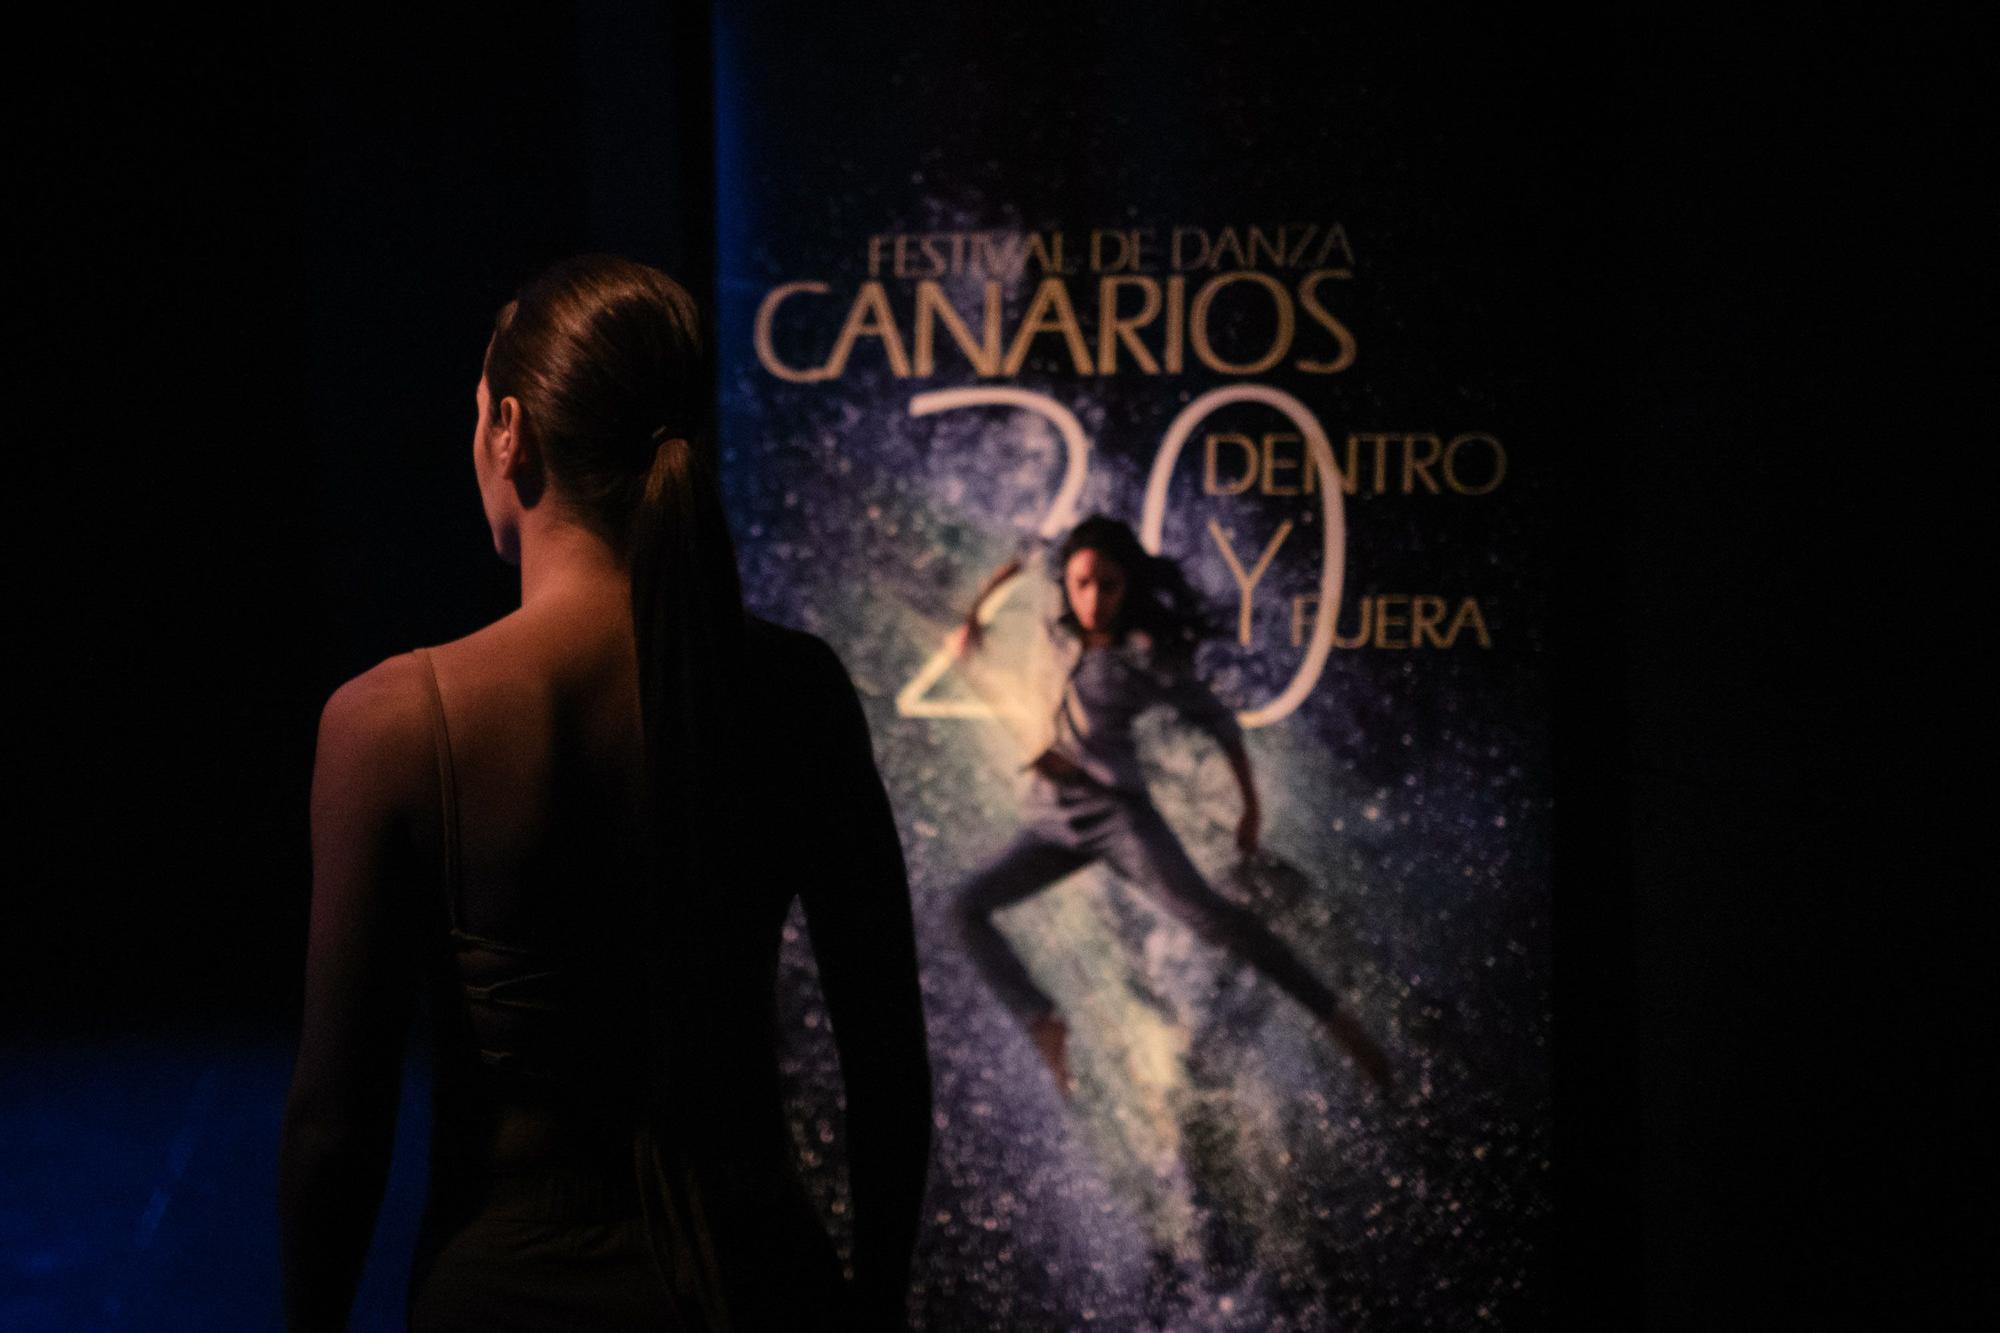 Representación de Emiliana Battitsta para presentar el Festival de Danza Canarios